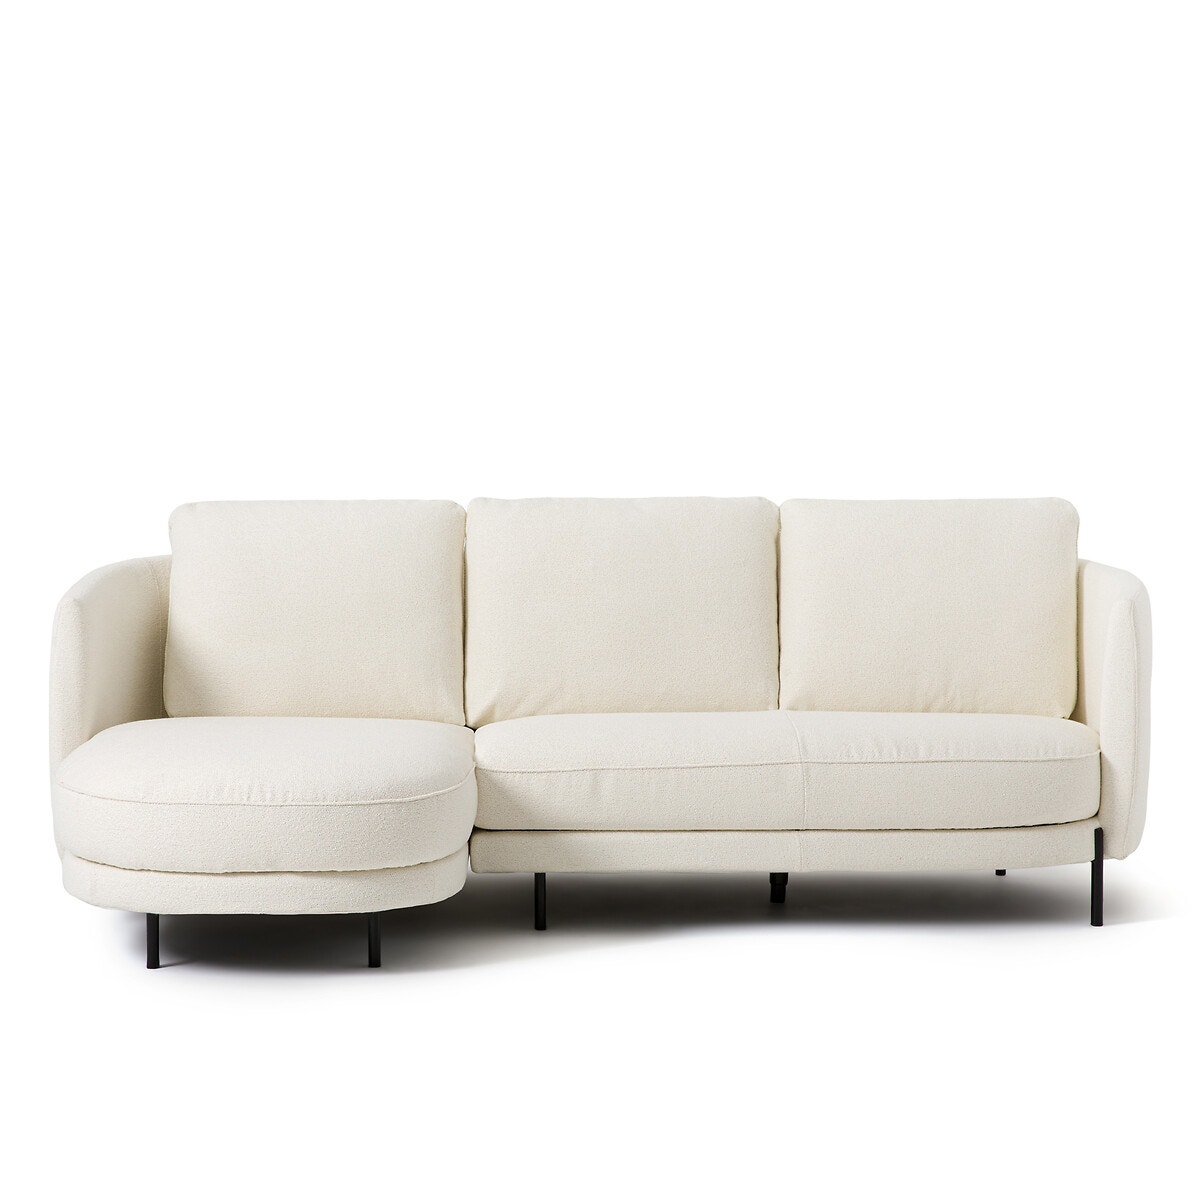 Γωνιακός καναπές μπουκλέ ταπετσαρία Arcus, σχεδίασης E. Gallina